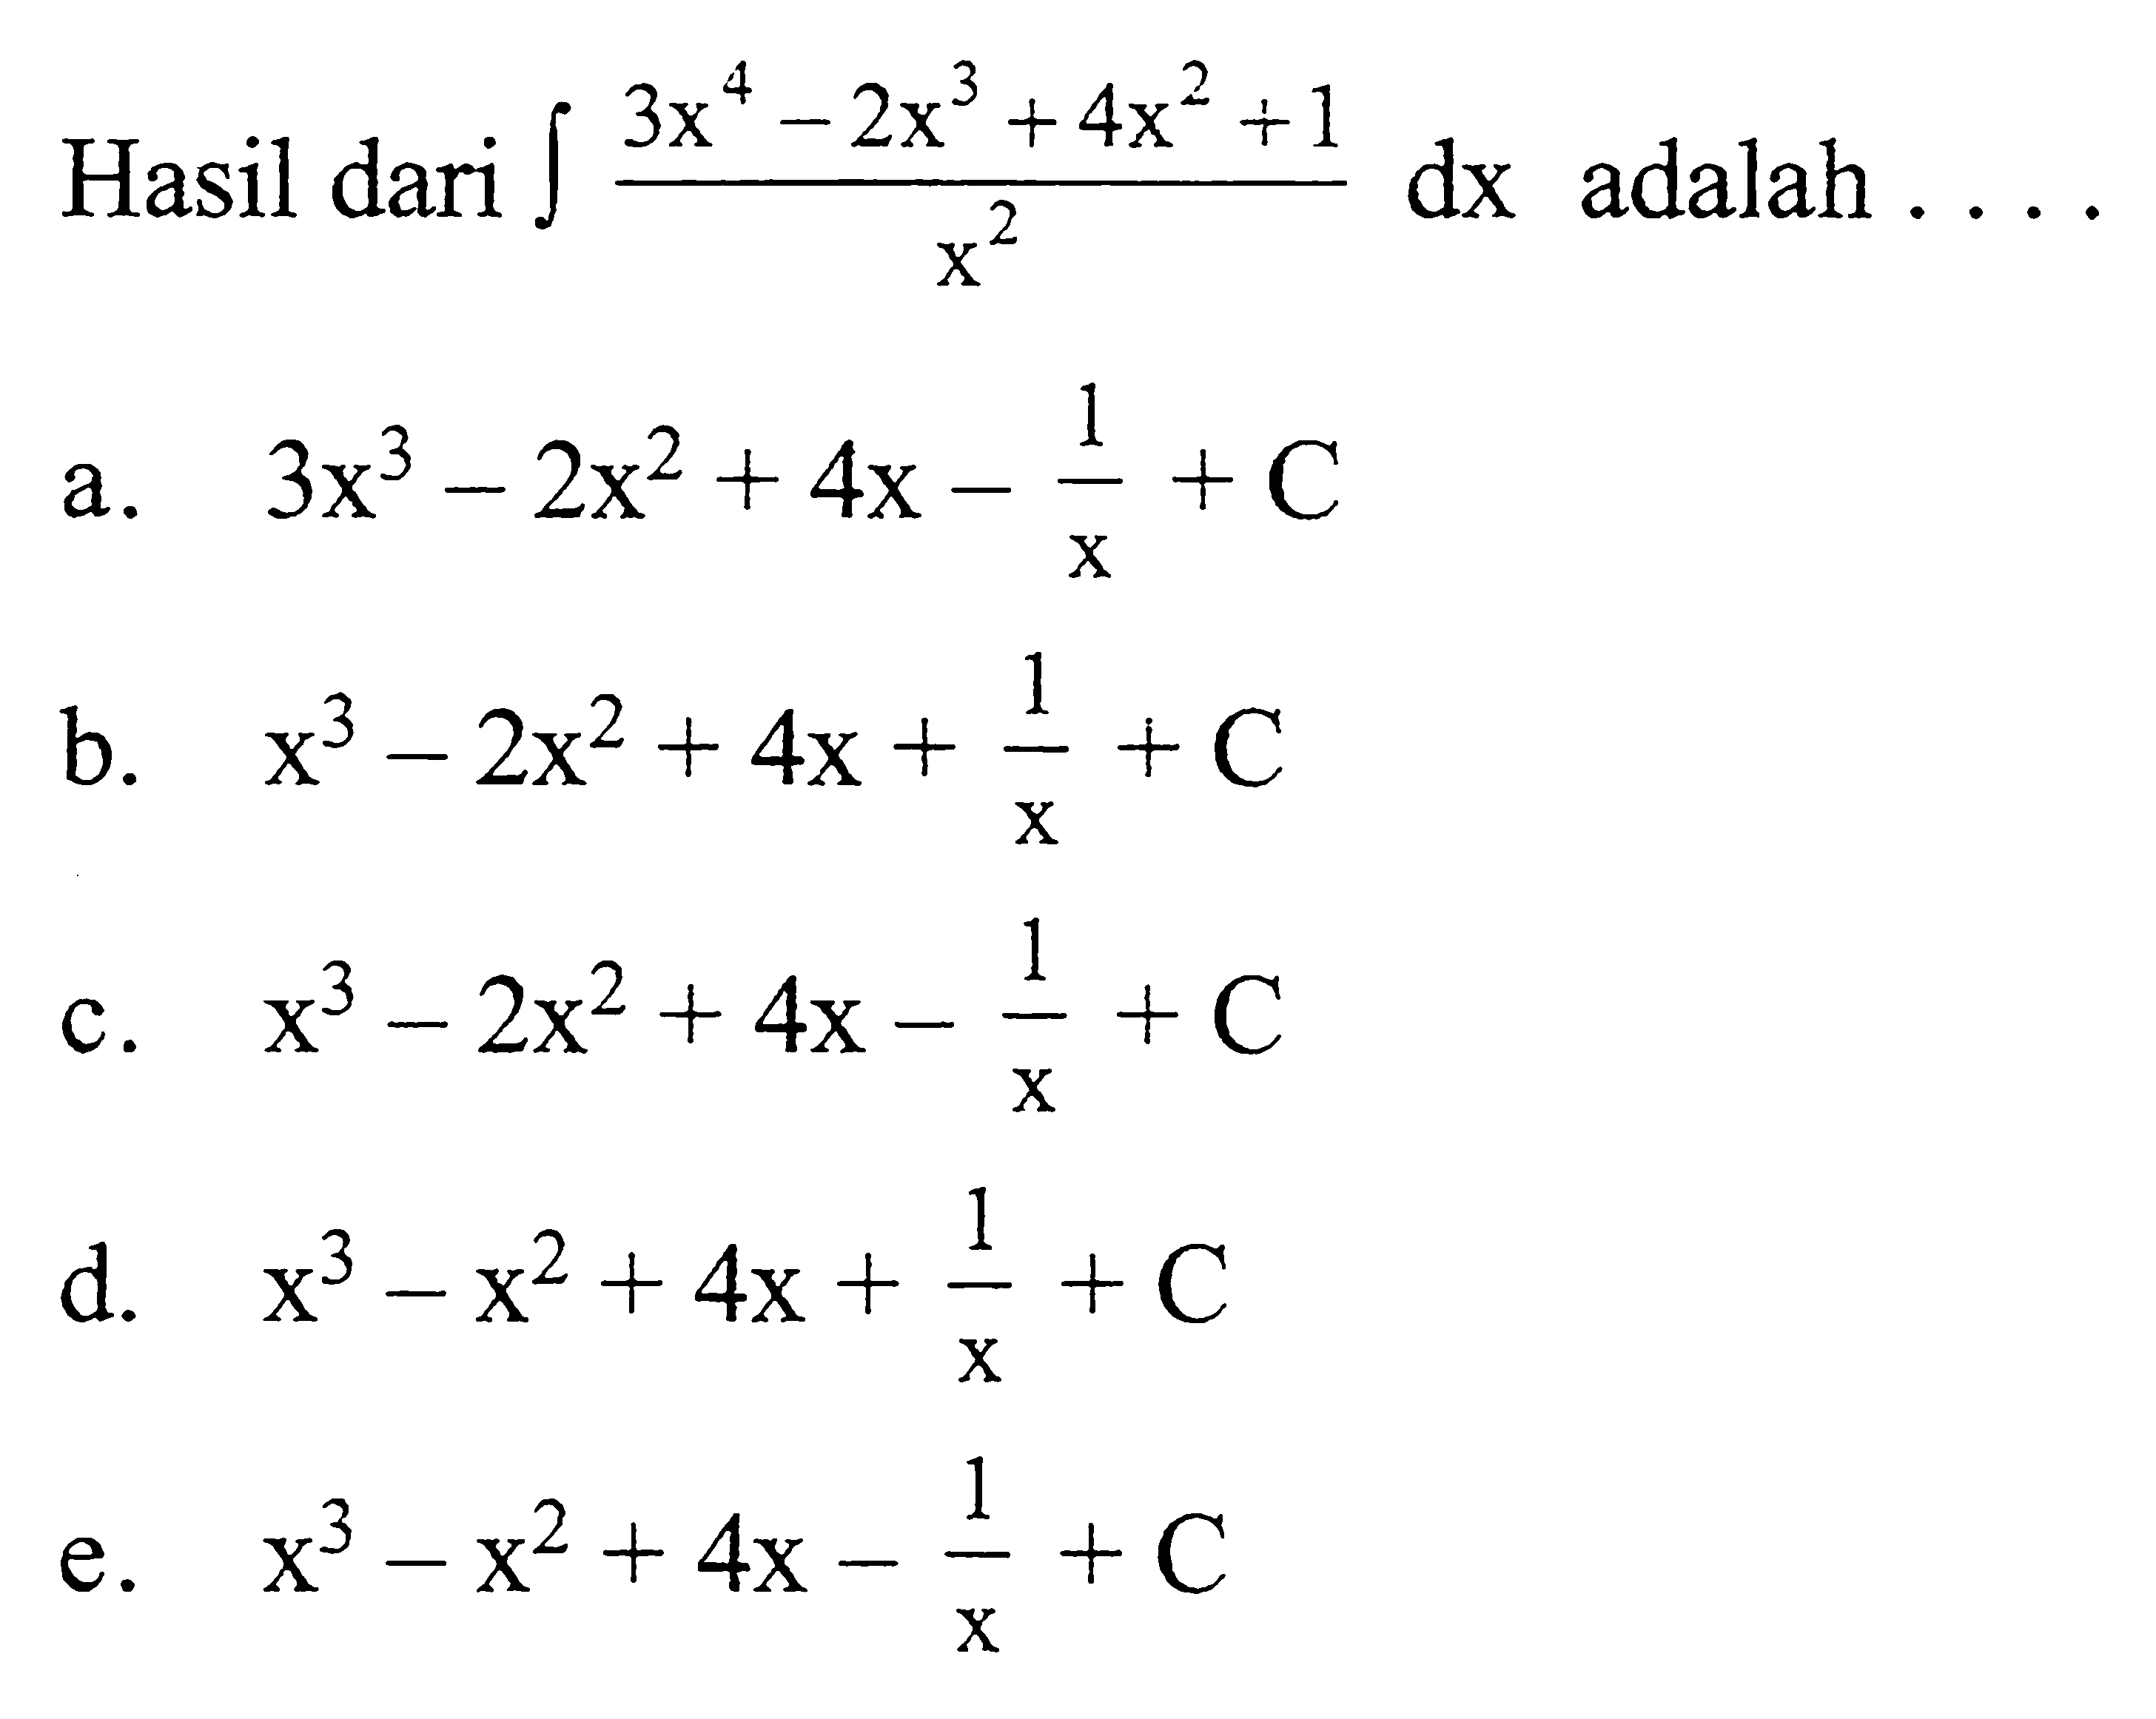 Hasil dari integral 3x^4-2x^3+4x^2+1/x^2 dx adalah ....